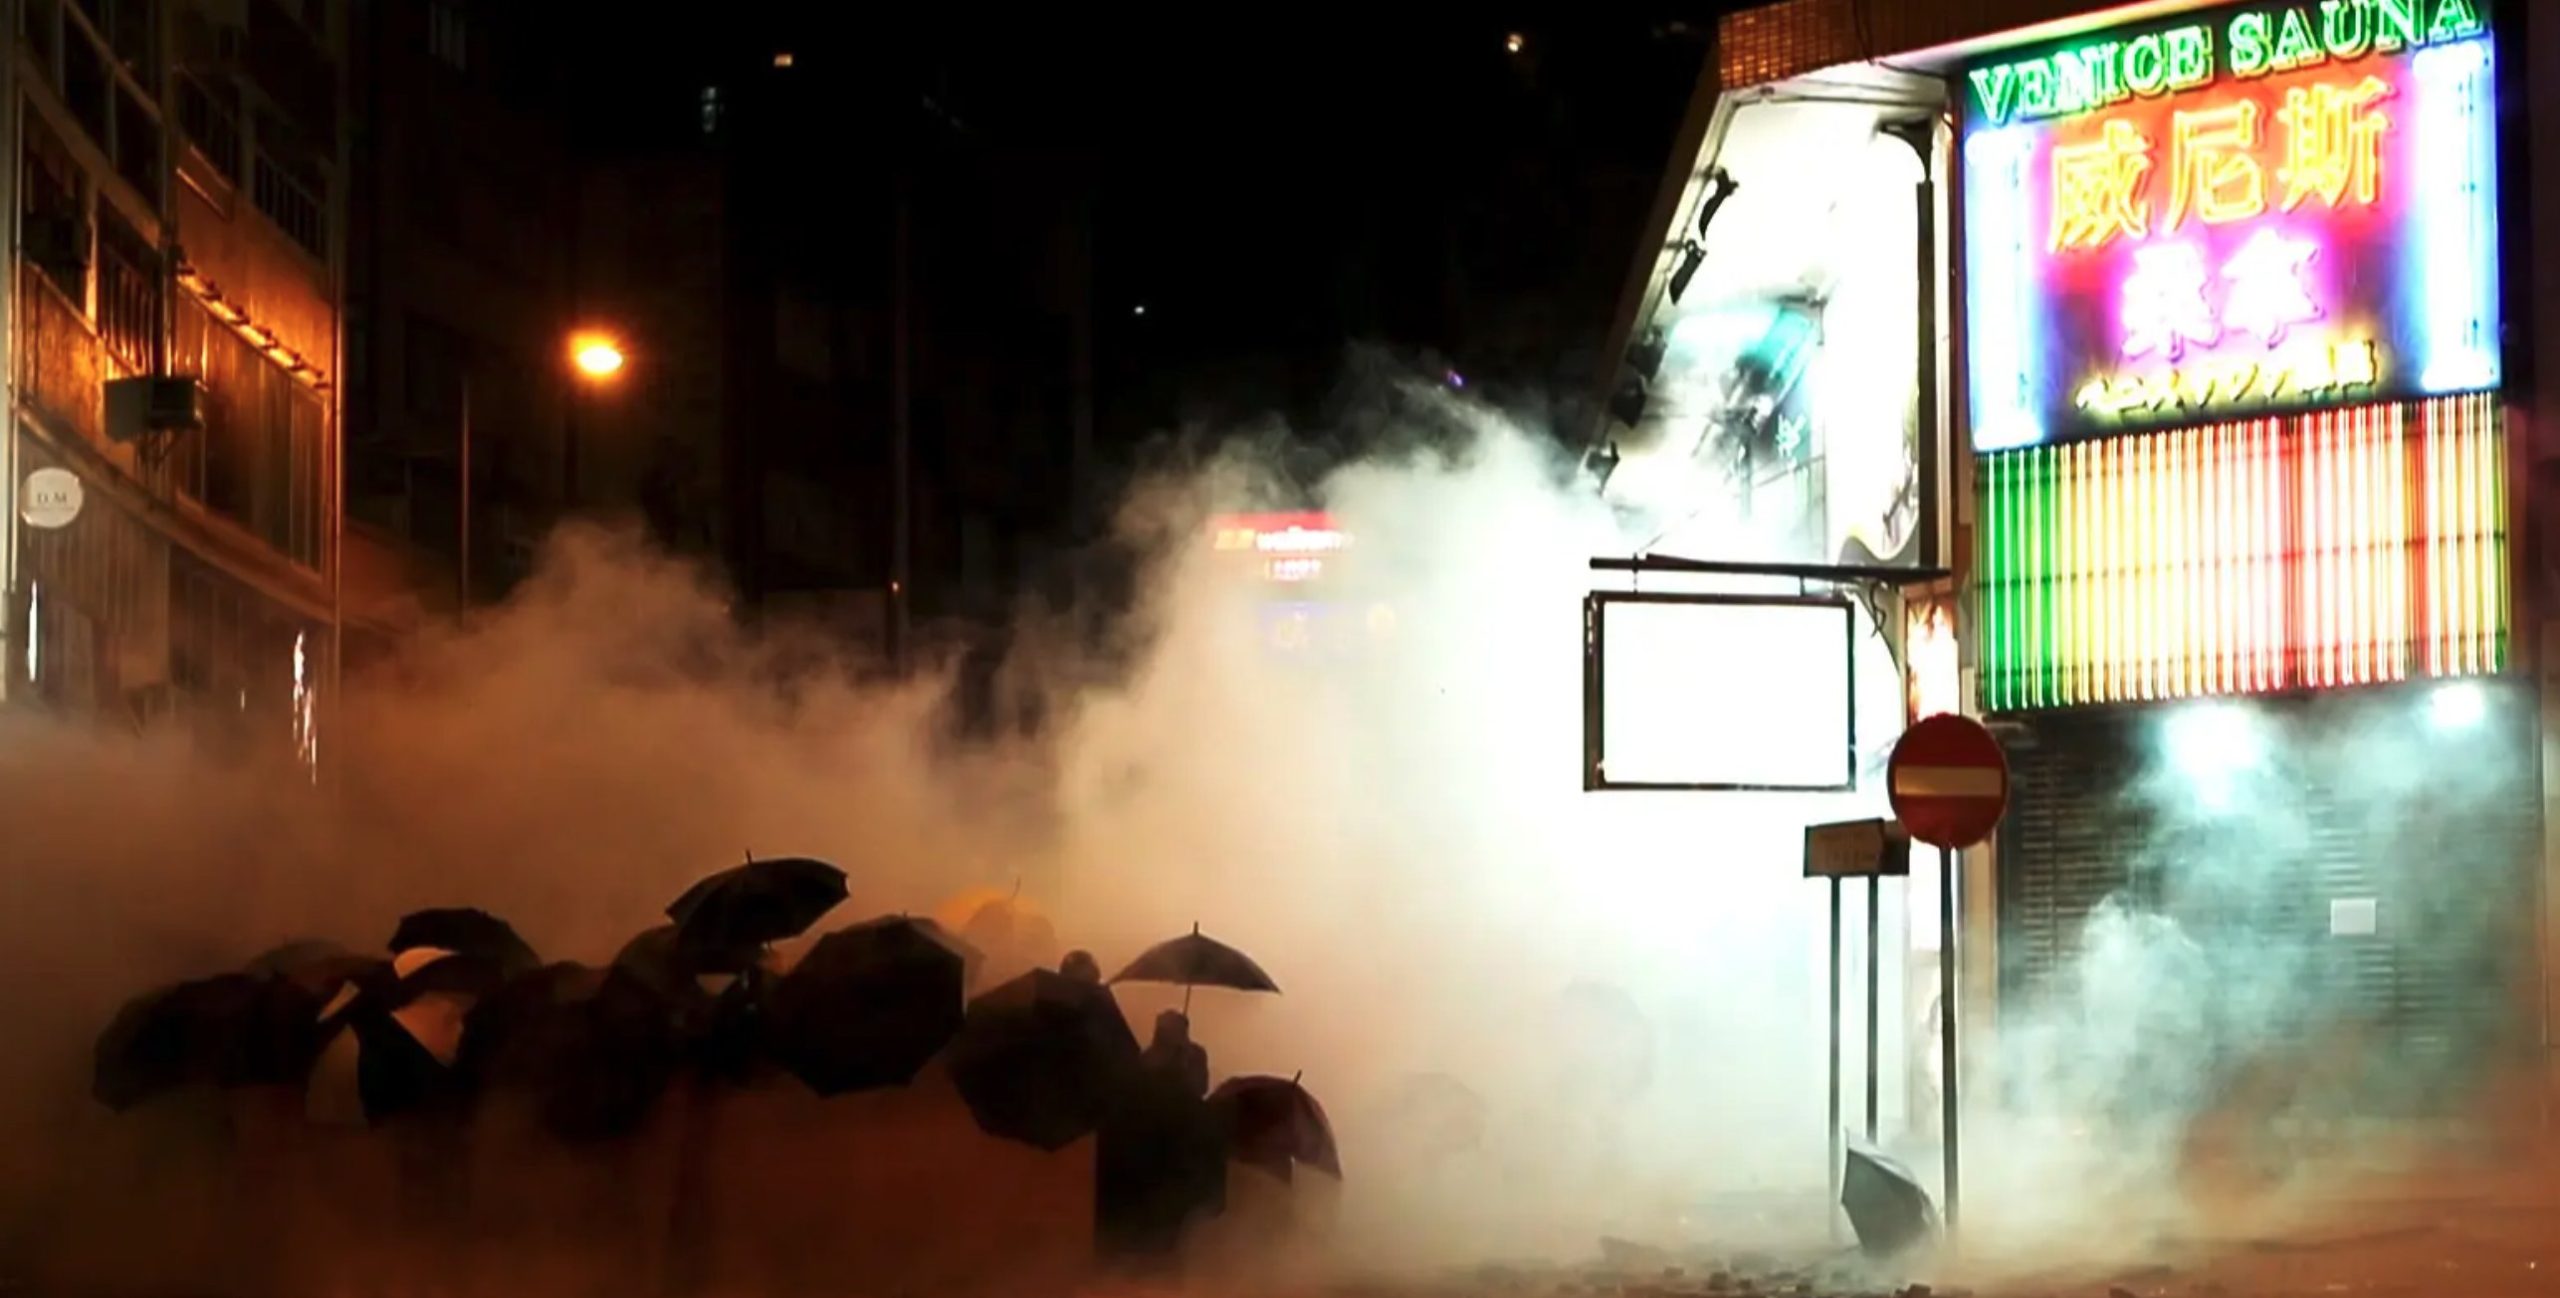 Cena do curta Do Not Split. Em meio a fumaça de gás lacrimogêneo, podemos ver vários manifestantes pró-Hong Kong segurando guarda chuvas. Eles estão em uma rua, é noite, e há um edifício comercial ao lado direito.